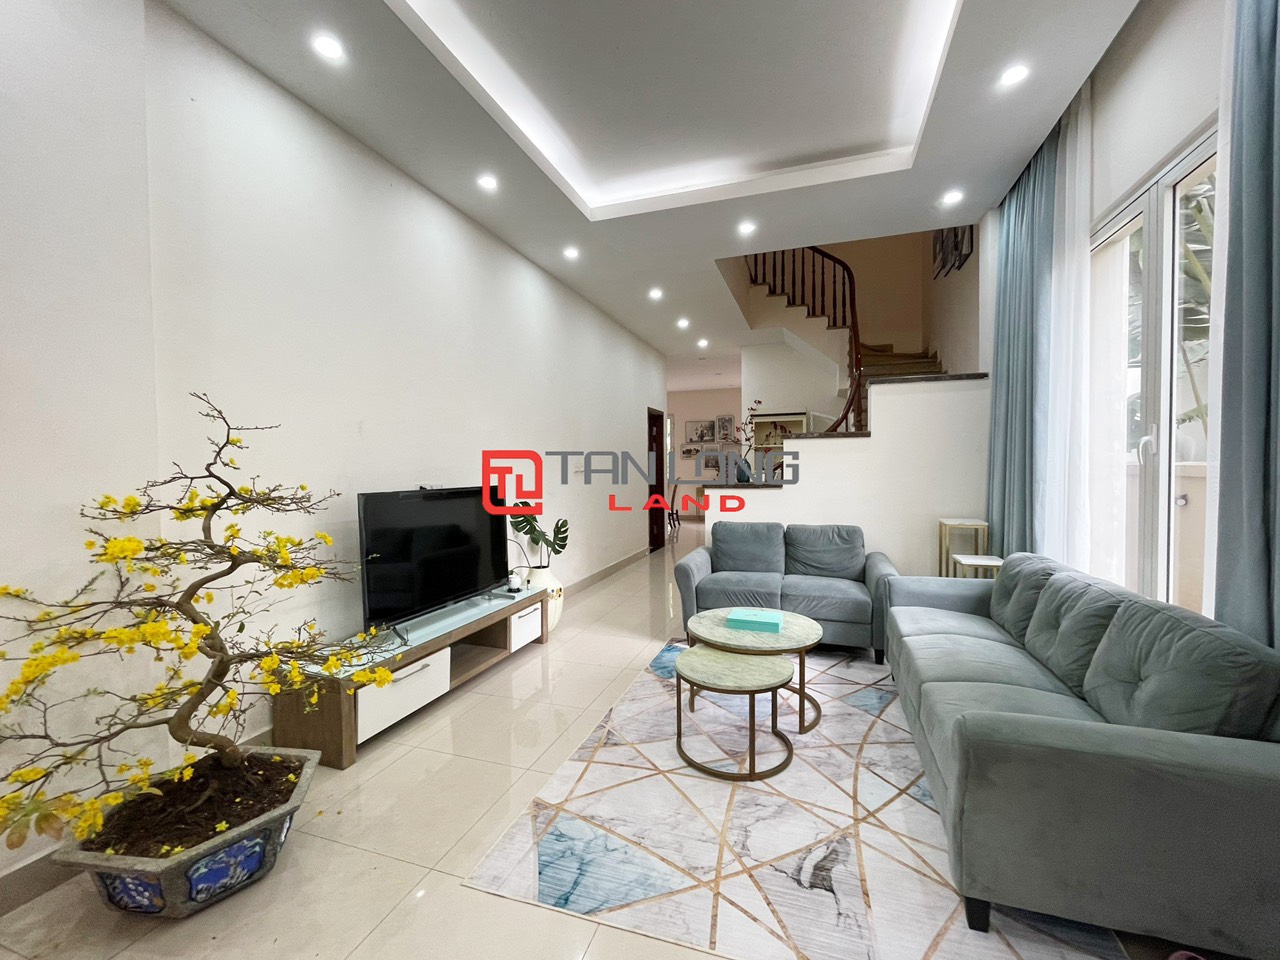 5 Bedrooms Duplex Villa for Rent with Reasonable Price in Vinhomes Riverside Long Bien 1